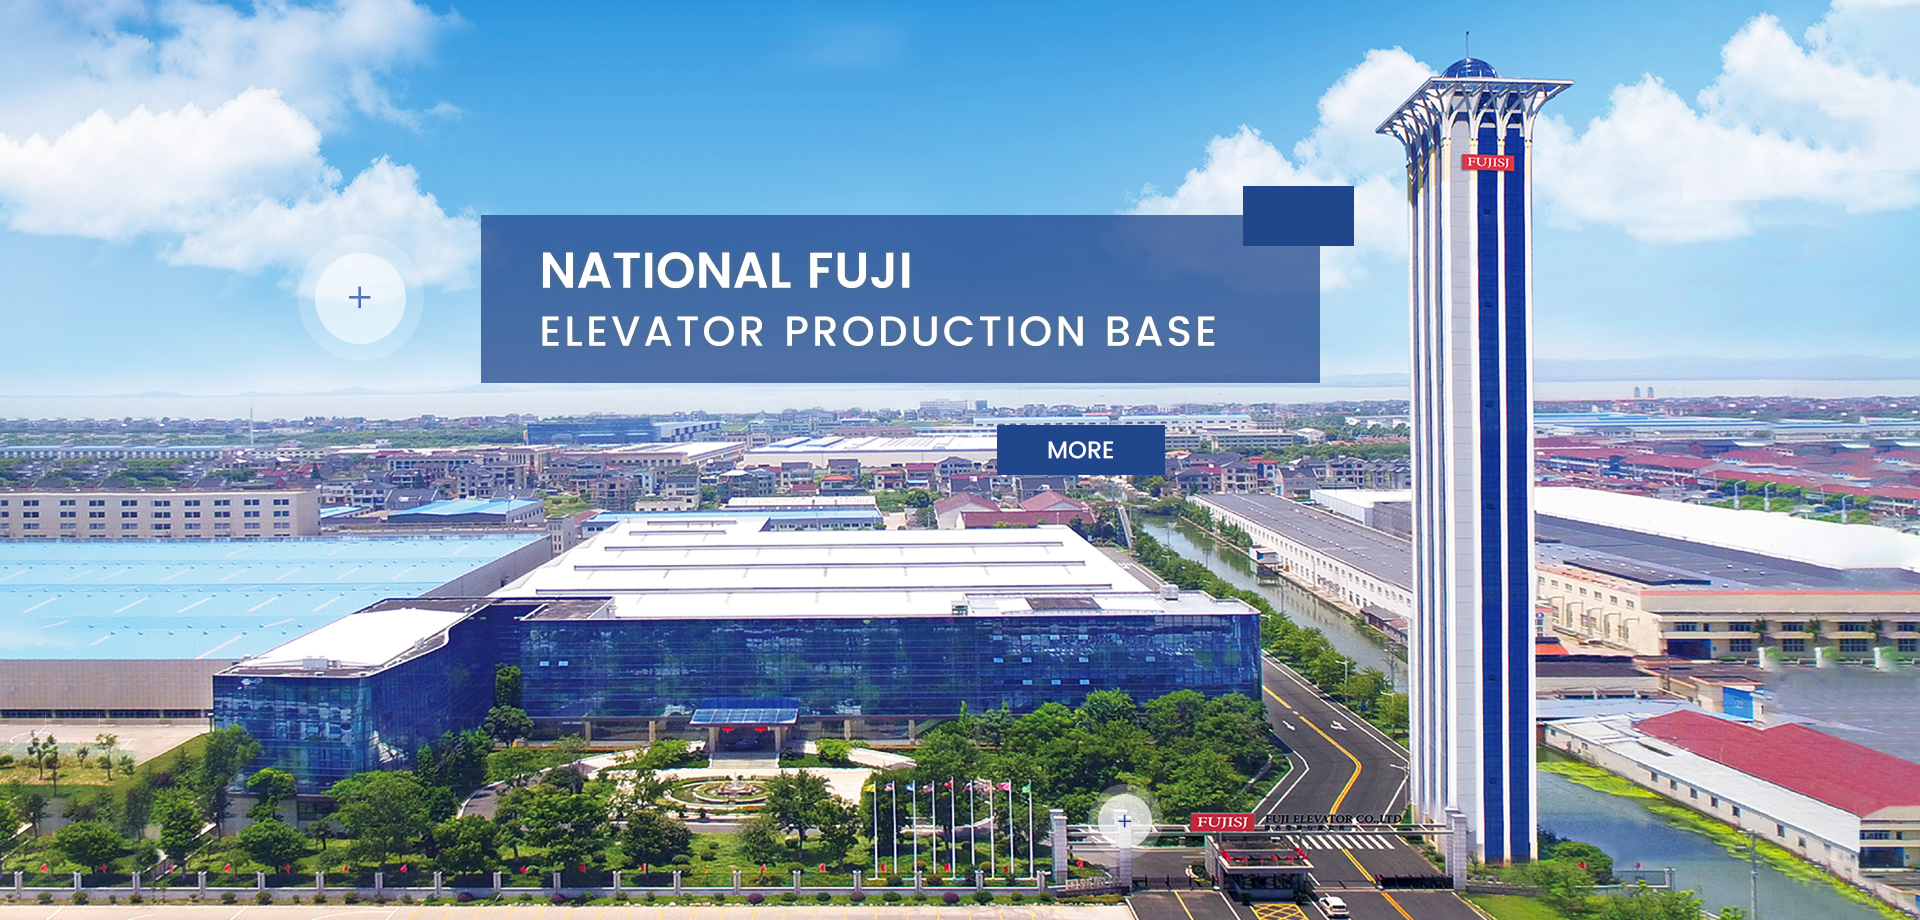 Base nationale de production d'ascenseurs Fuji